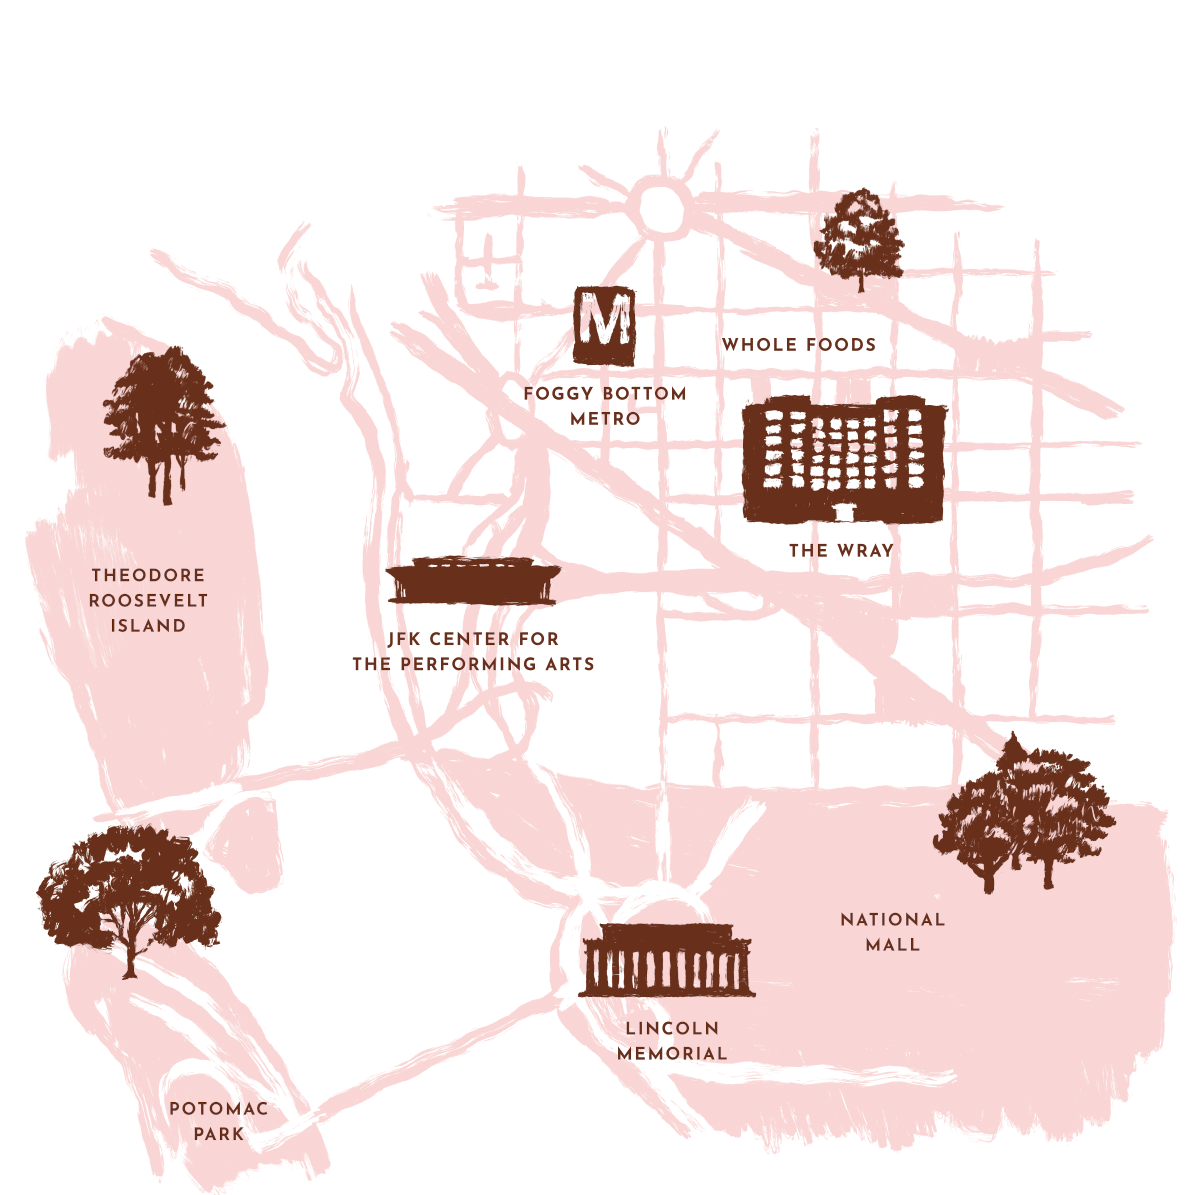 TheWray_Illustration_Map-scaled